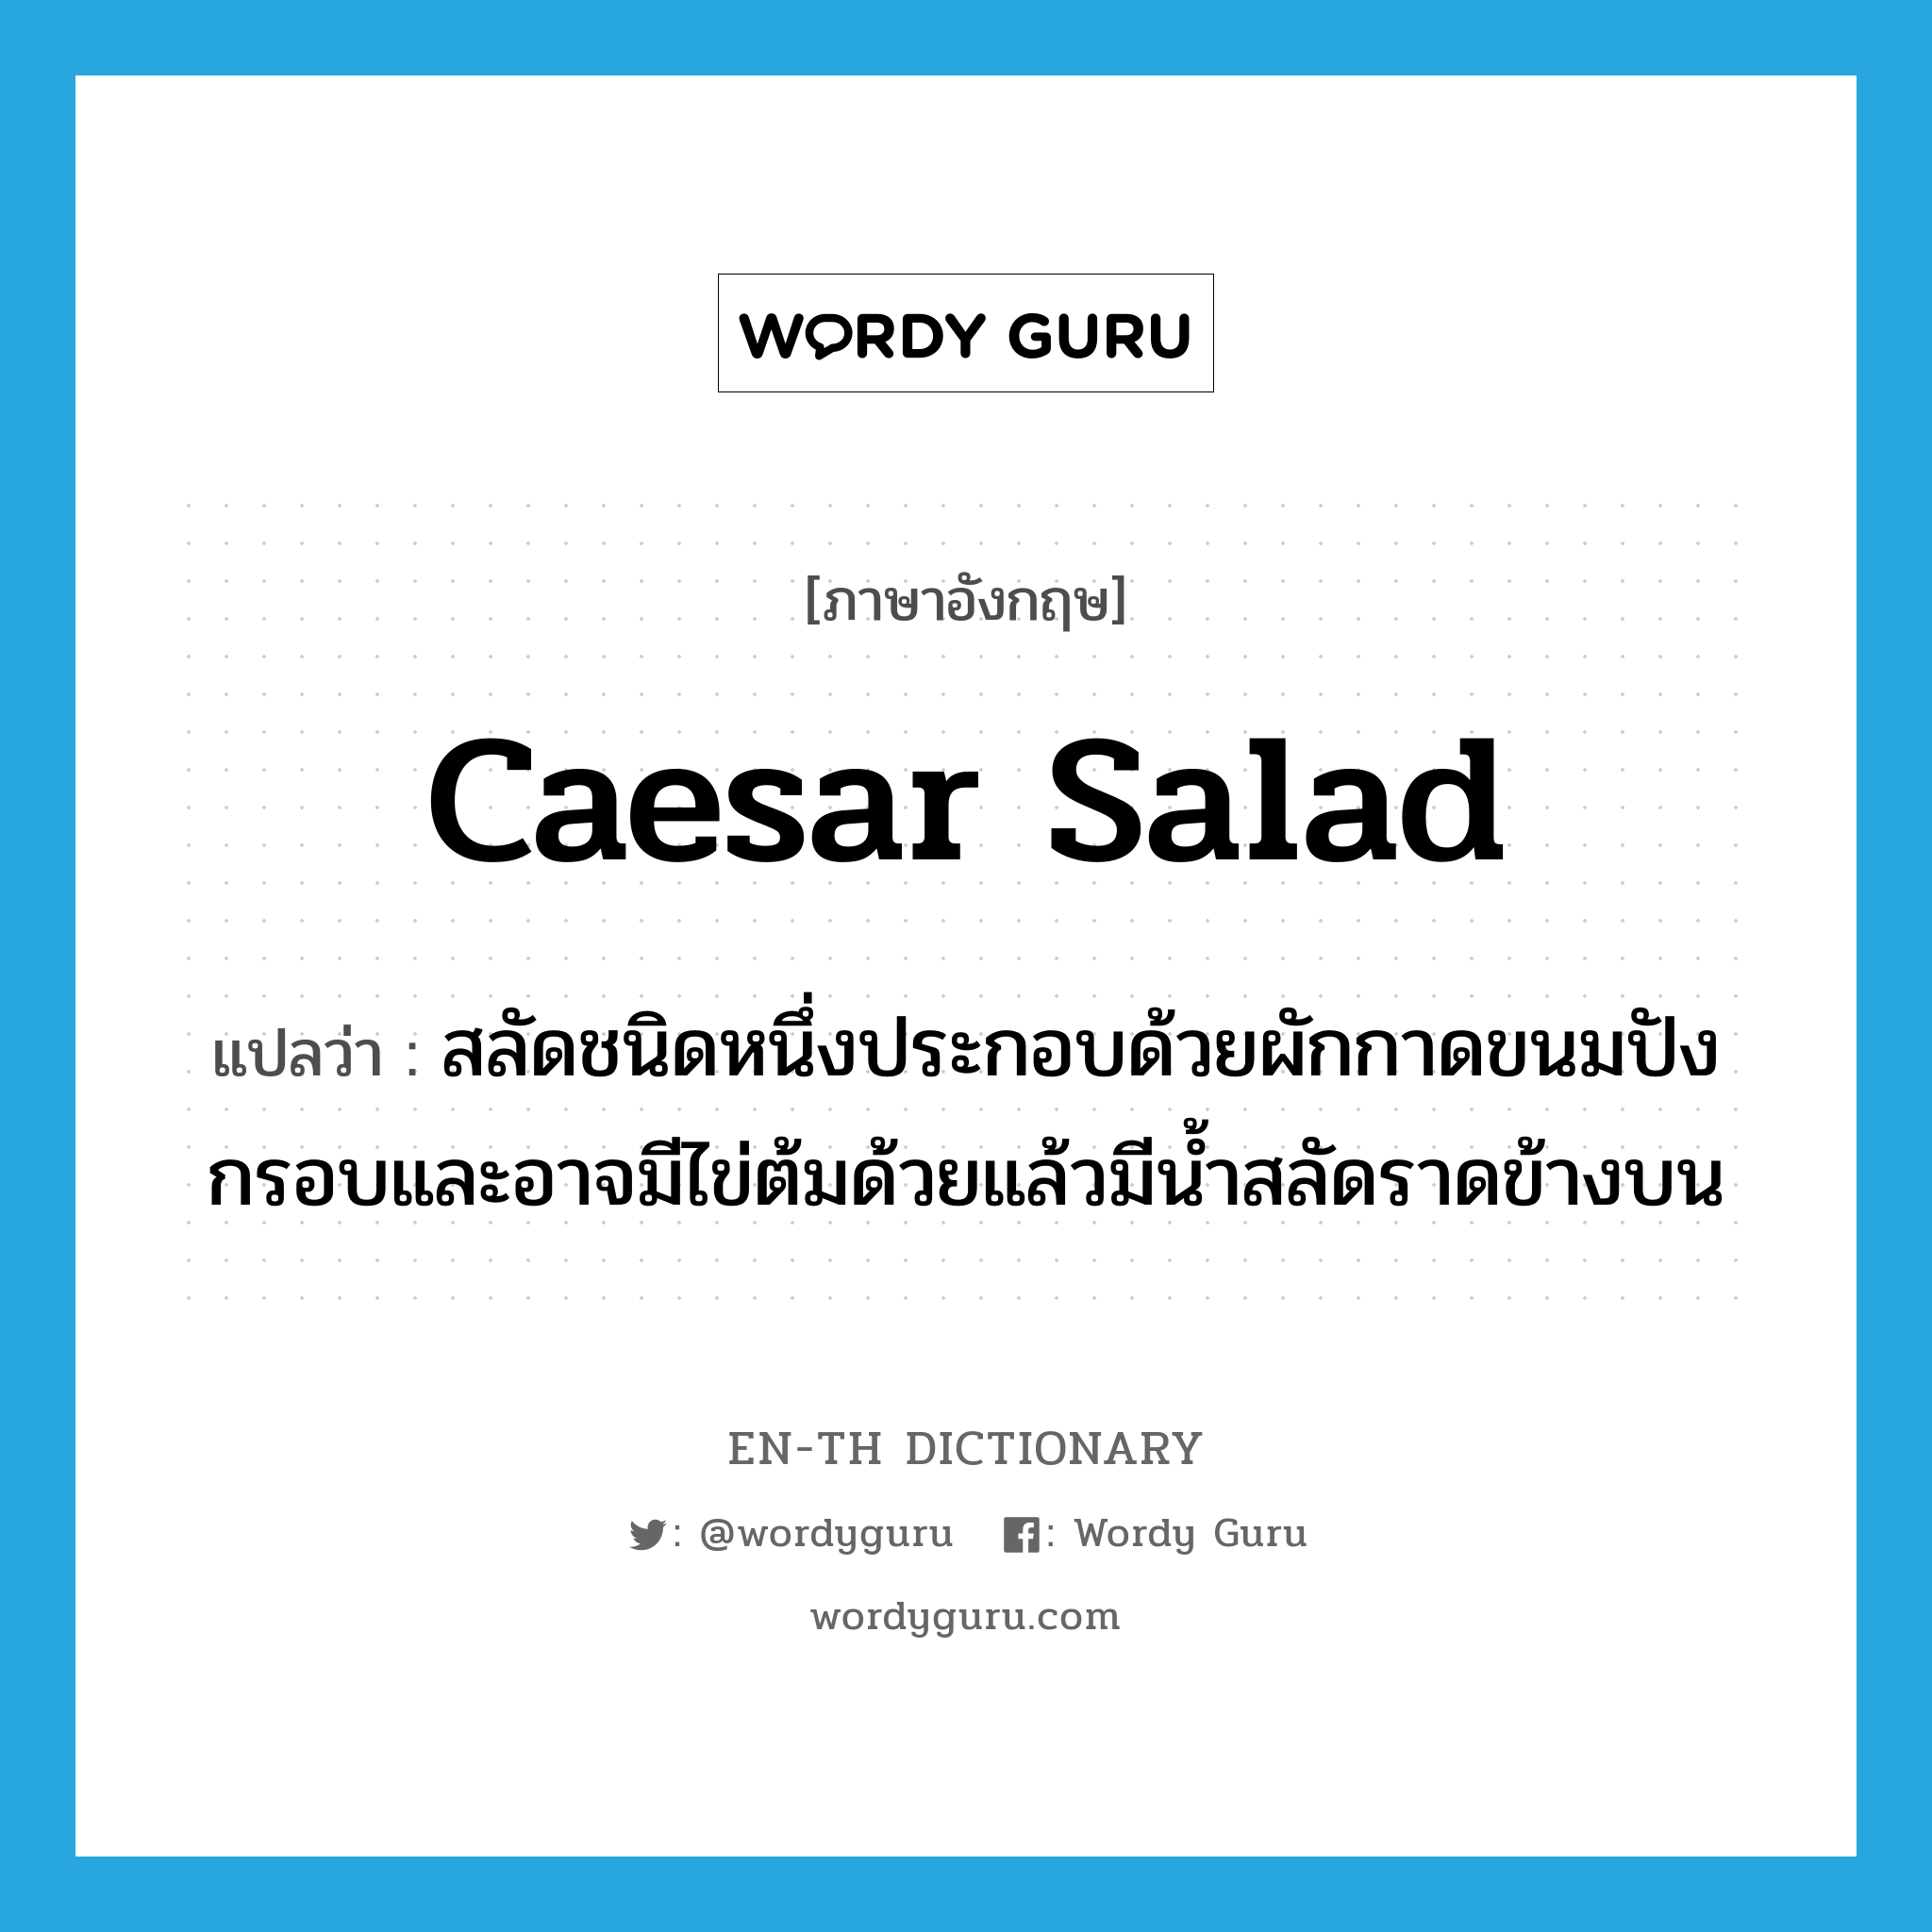 Caesar salad แปลว่า?, คำศัพท์ภาษาอังกฤษ Caesar salad แปลว่า สลัดชนิดหนึ่งประกอบด้วยผักกาดขนมปังกรอบและอาจมีไข่ต้มด้วยแล้วมีน้ำสลัดราดข้างบน ประเภท N หมวด N